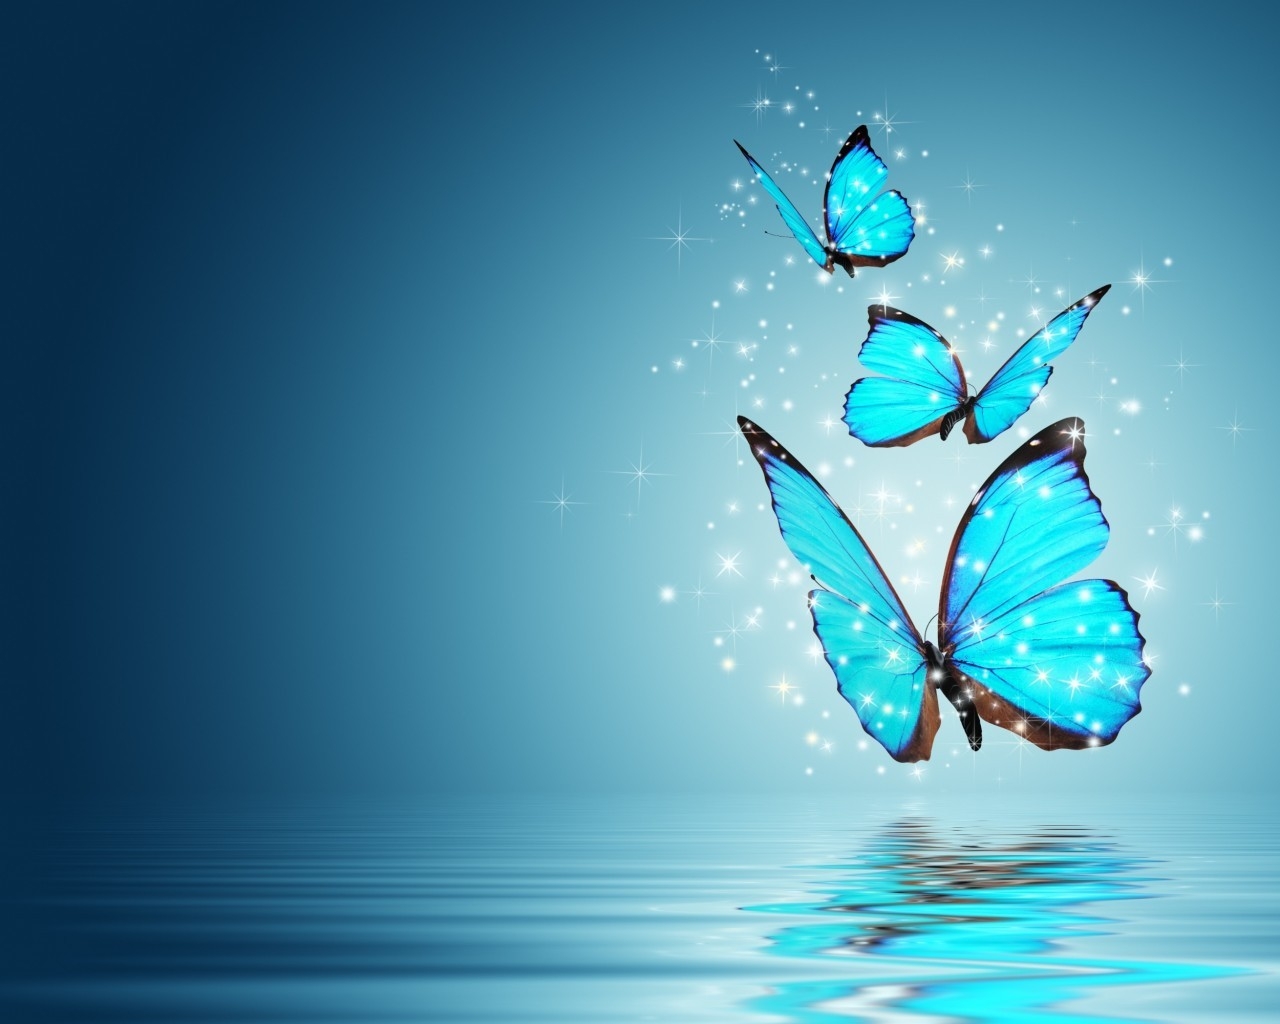 Blue Butterflies for 1280 x 1024 resolution